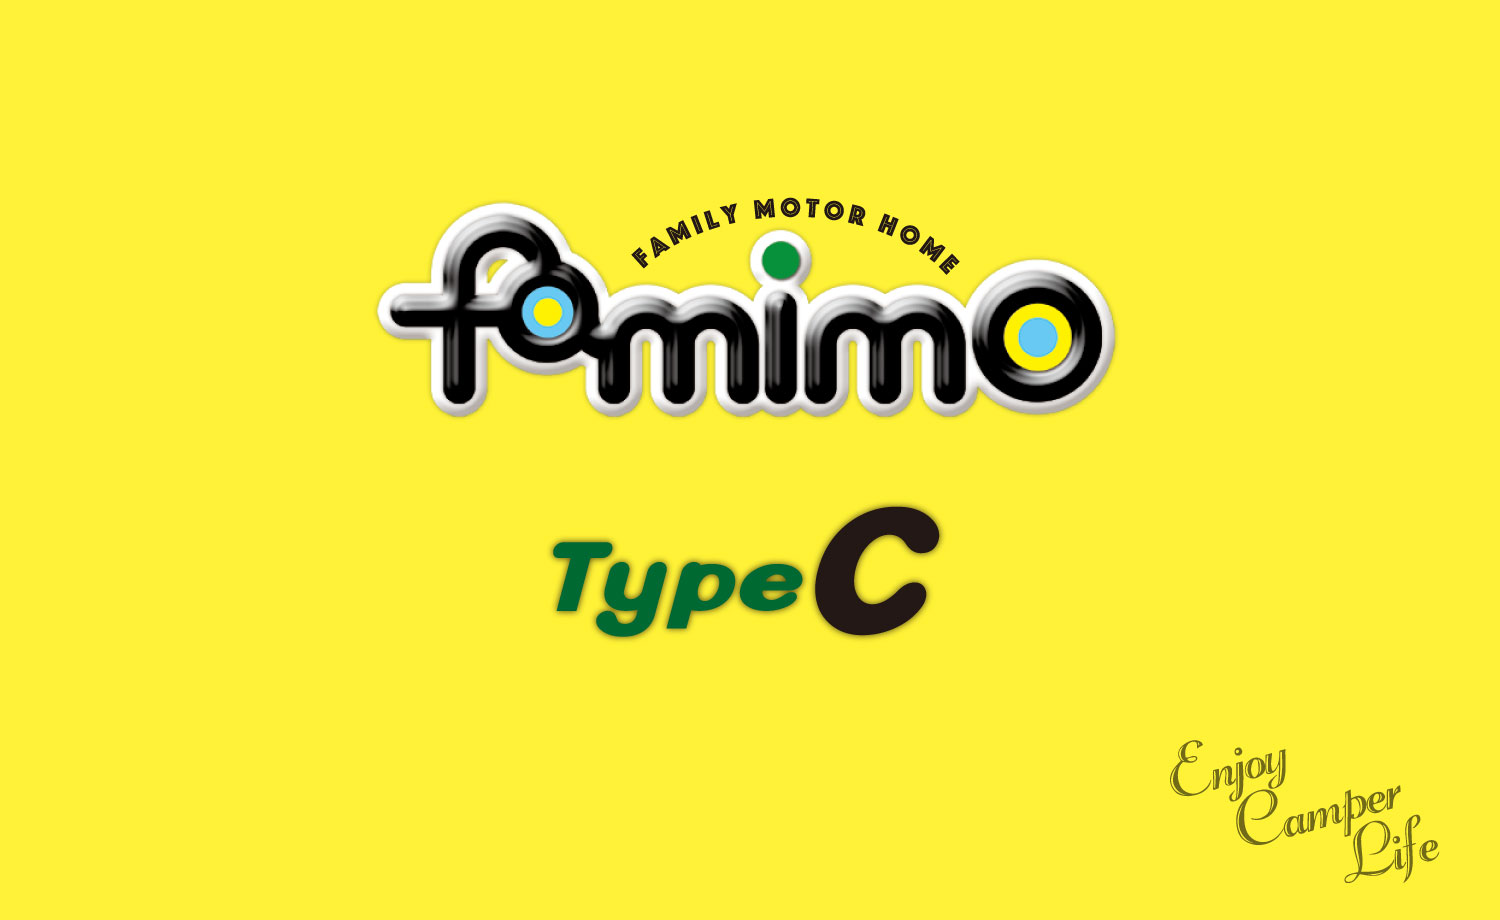 バンコンキャンピングカーファミモ -famimoのスマホ用カバー写真